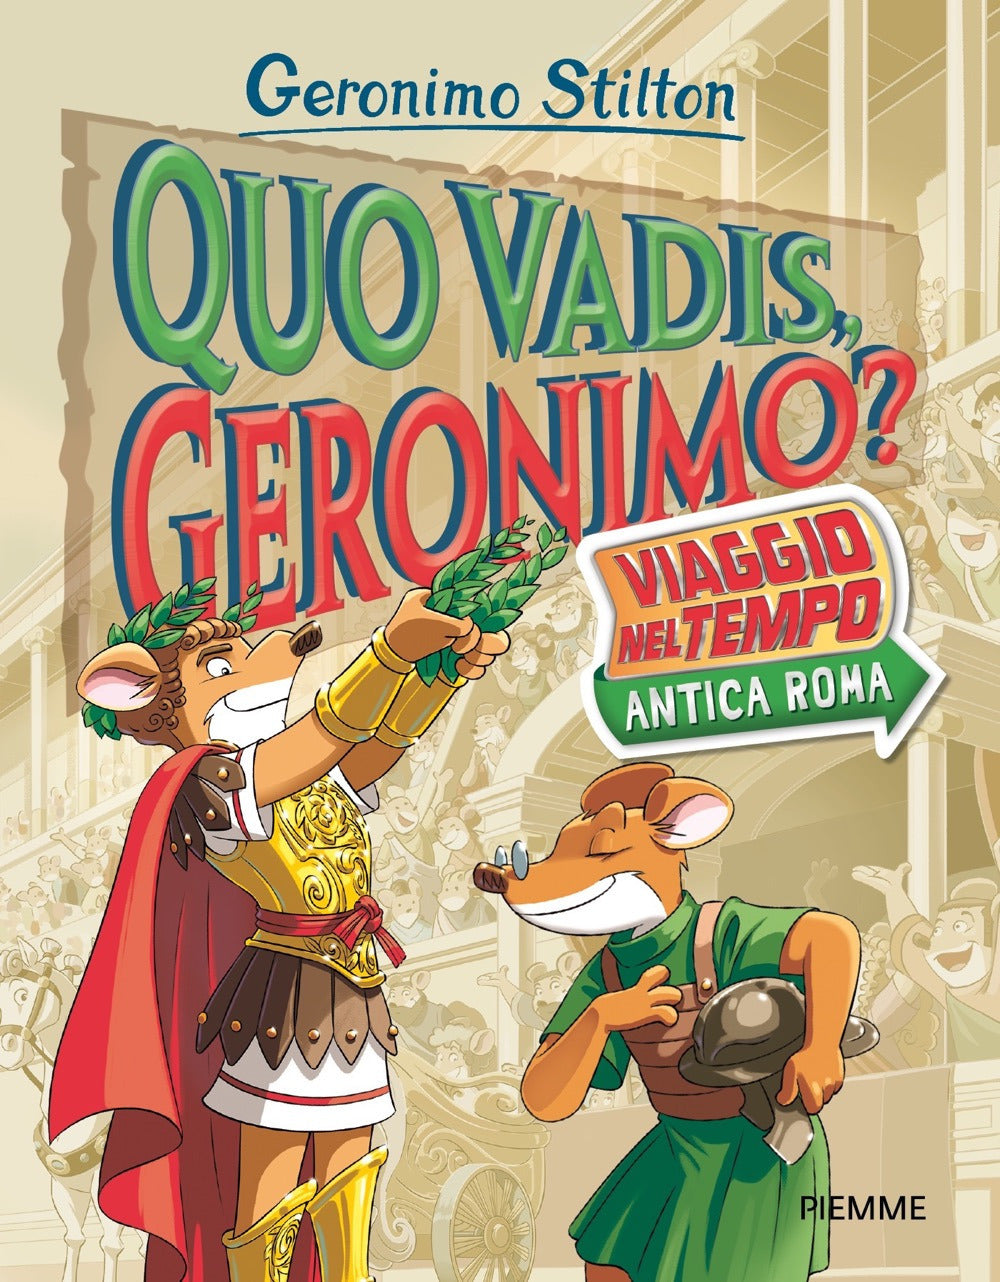 Quo vadis, Geronimo? Viaggio nel tempo: Antica Roma: libro di Geronimo  Stilton